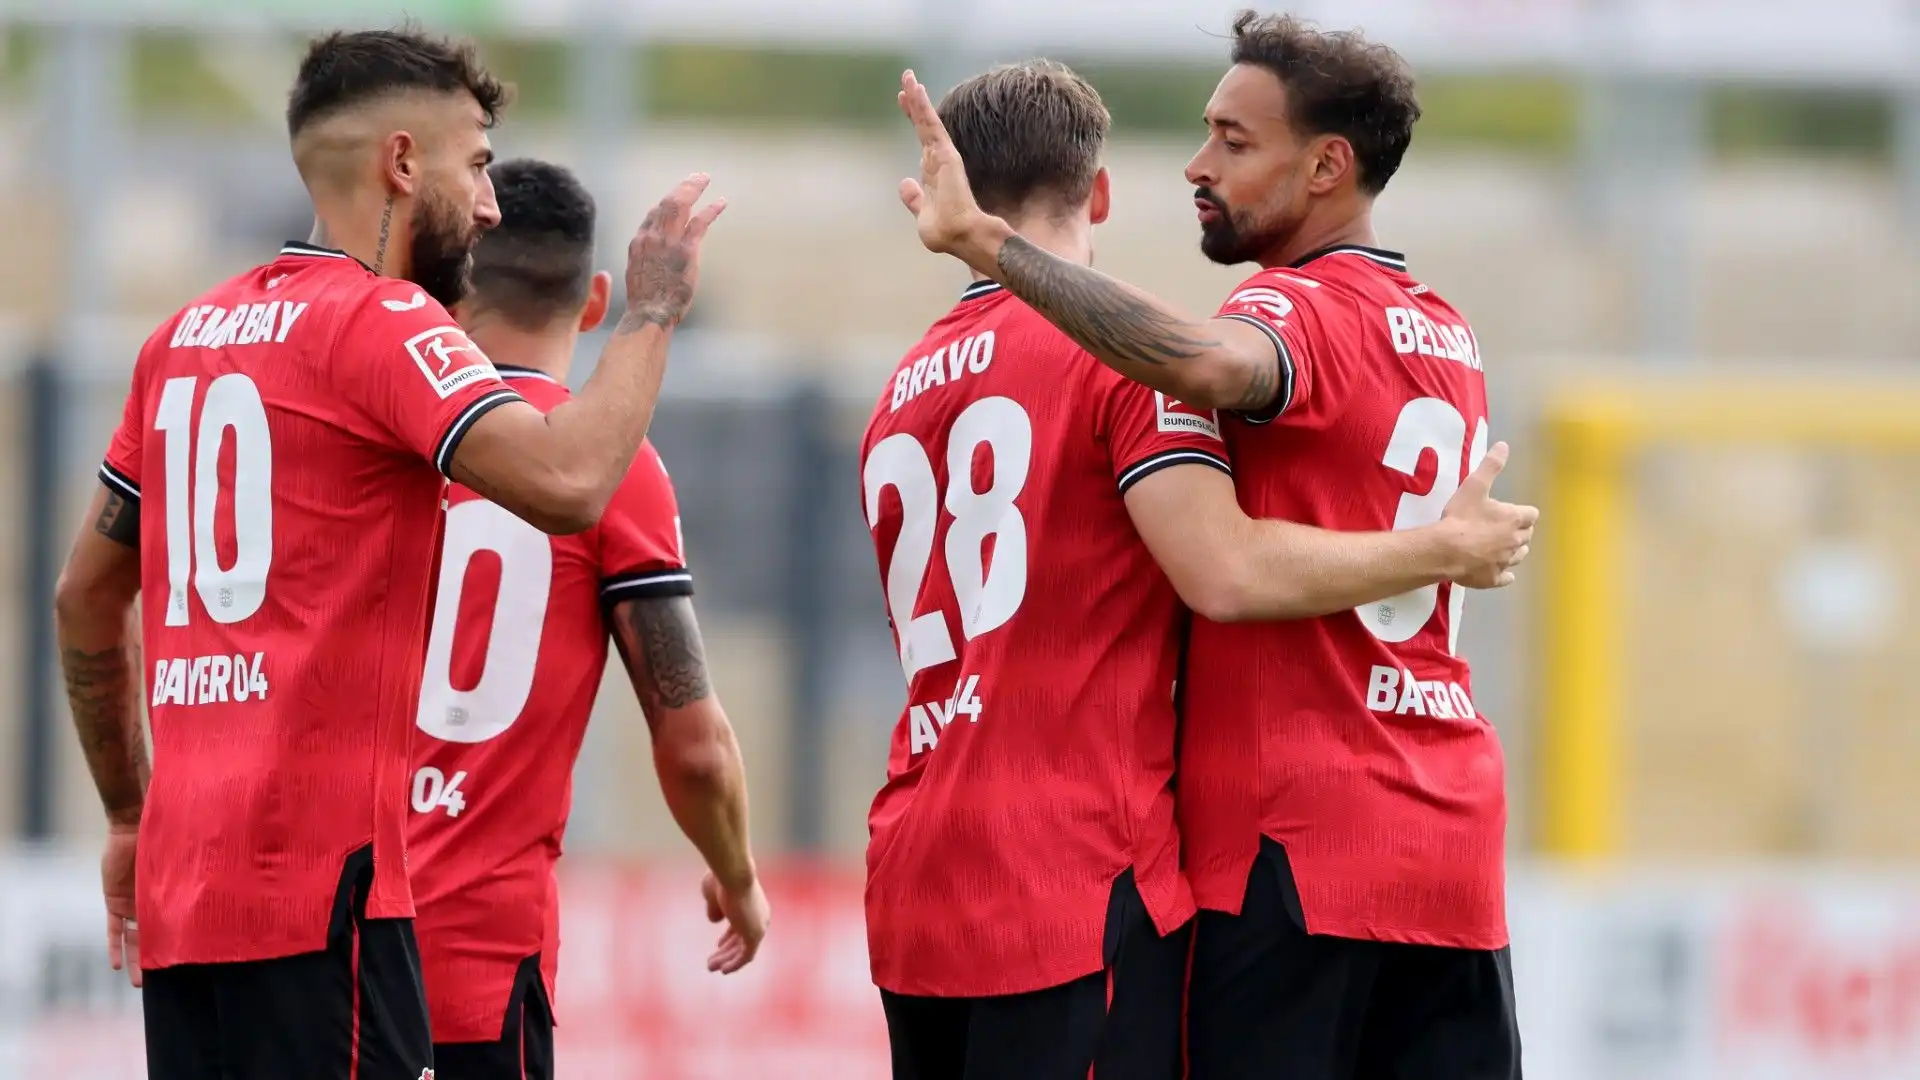 Salutato il Bayer Leverkusen dopo tantissimi anni, Karim Bellarabi potrebbe iniziare un nuovo capitolo nella sua carriera